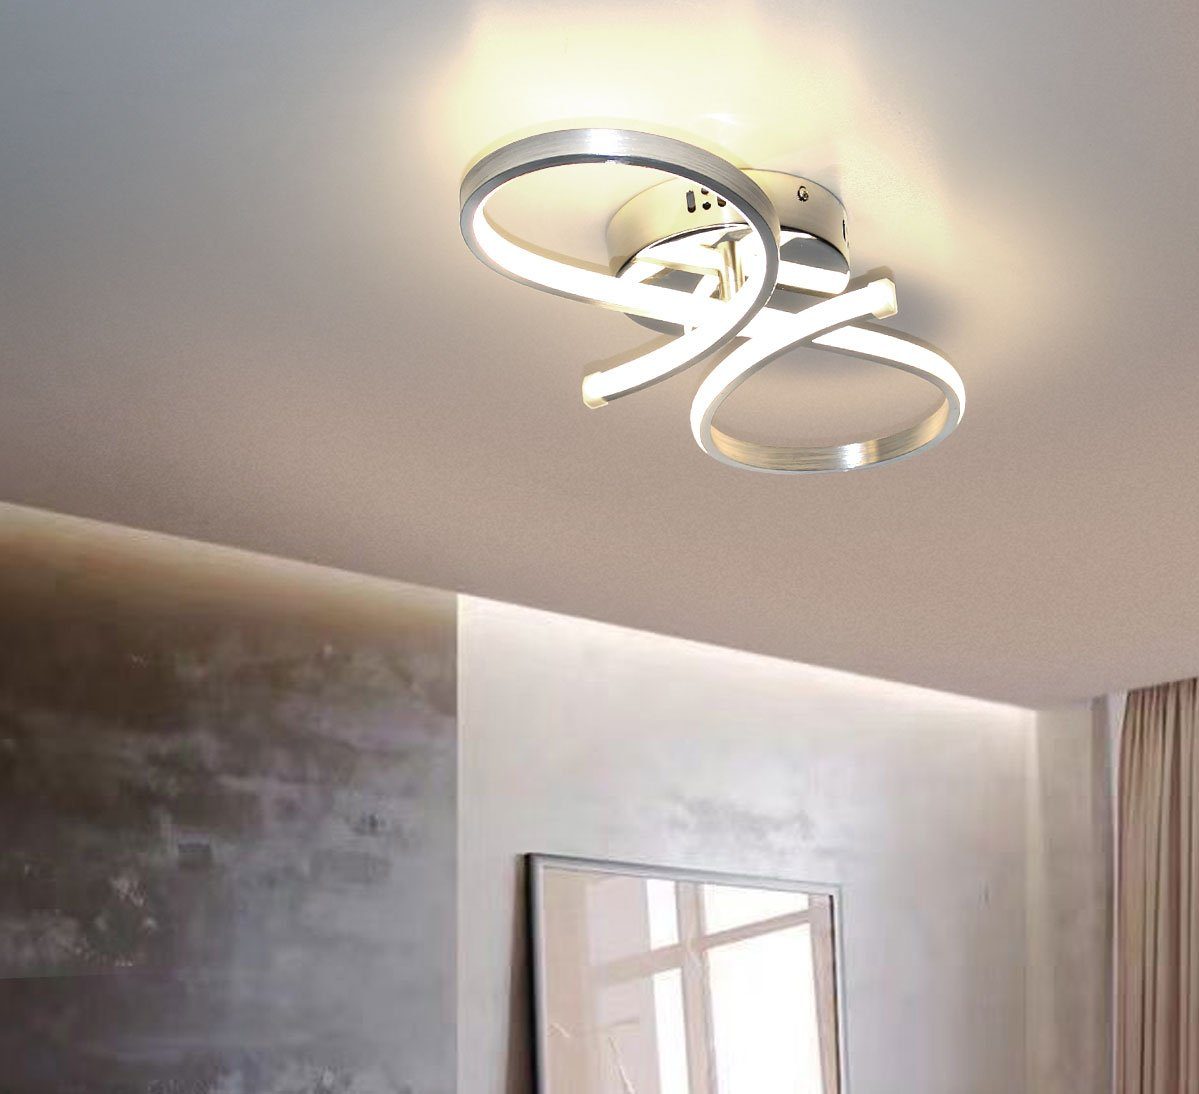 Alu Lampe Wohnzimmer mittlere hell, Deckenlampe ideale Leuchte satiniert sparsam 28W, / Warmweiß, Medium Schlafzimmer und 50x26cm Größe, Deckenleuchte »Octa« für Lewima gebürstet LED